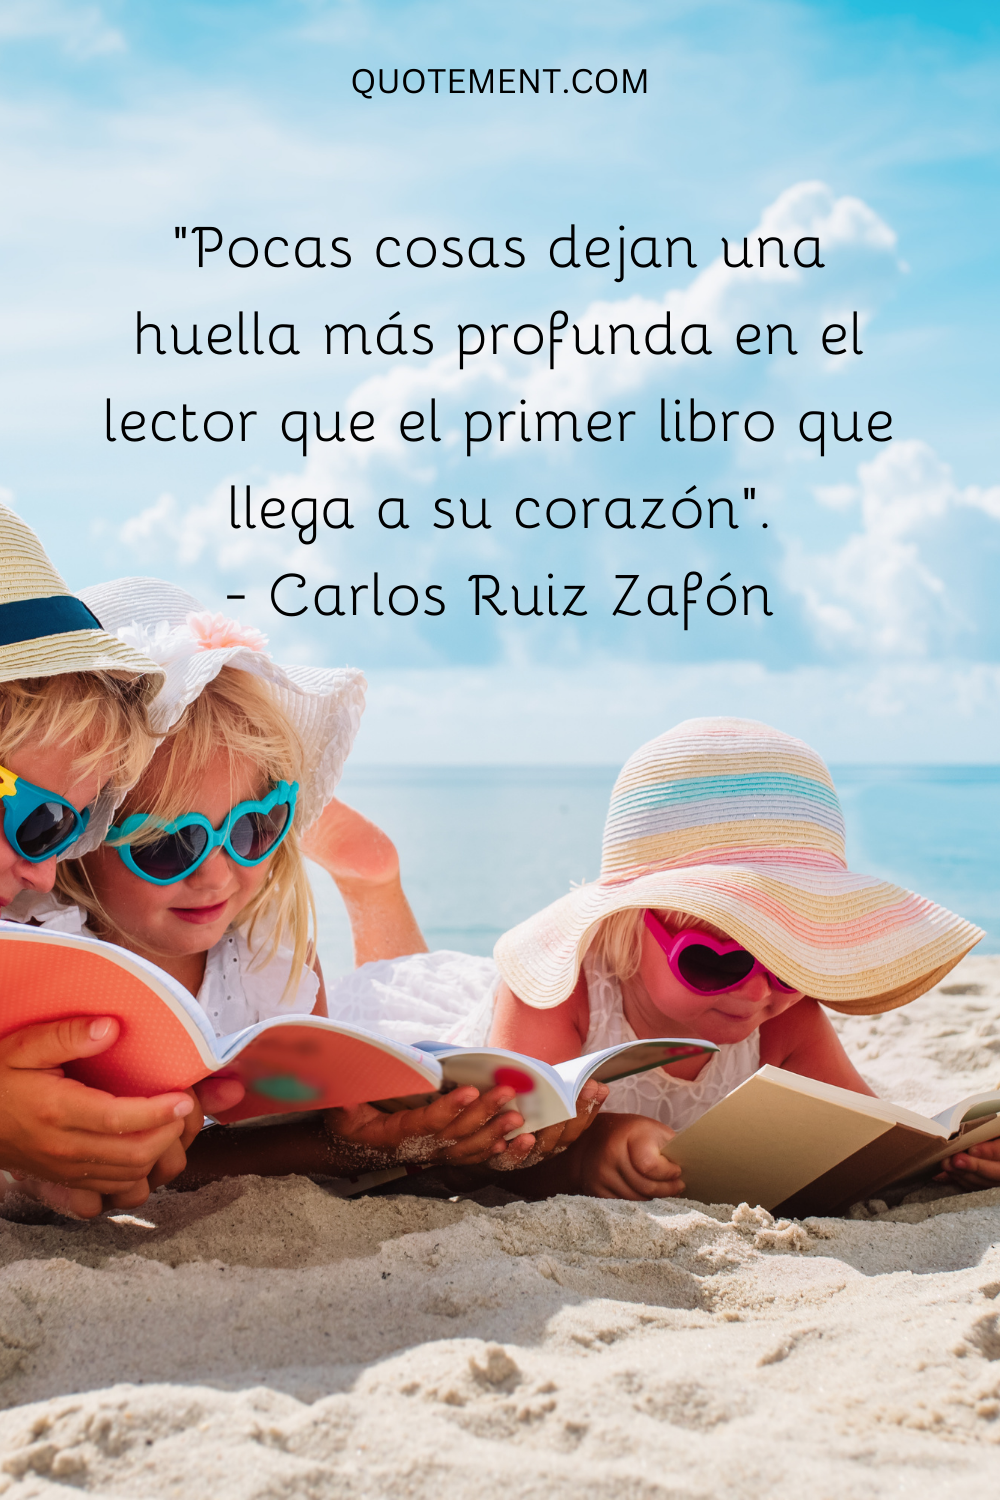 "Pocas cosas dejan una huella más profunda en el lector que el primer libro que le llega al corazón". - Carlos Ruiz Zafón